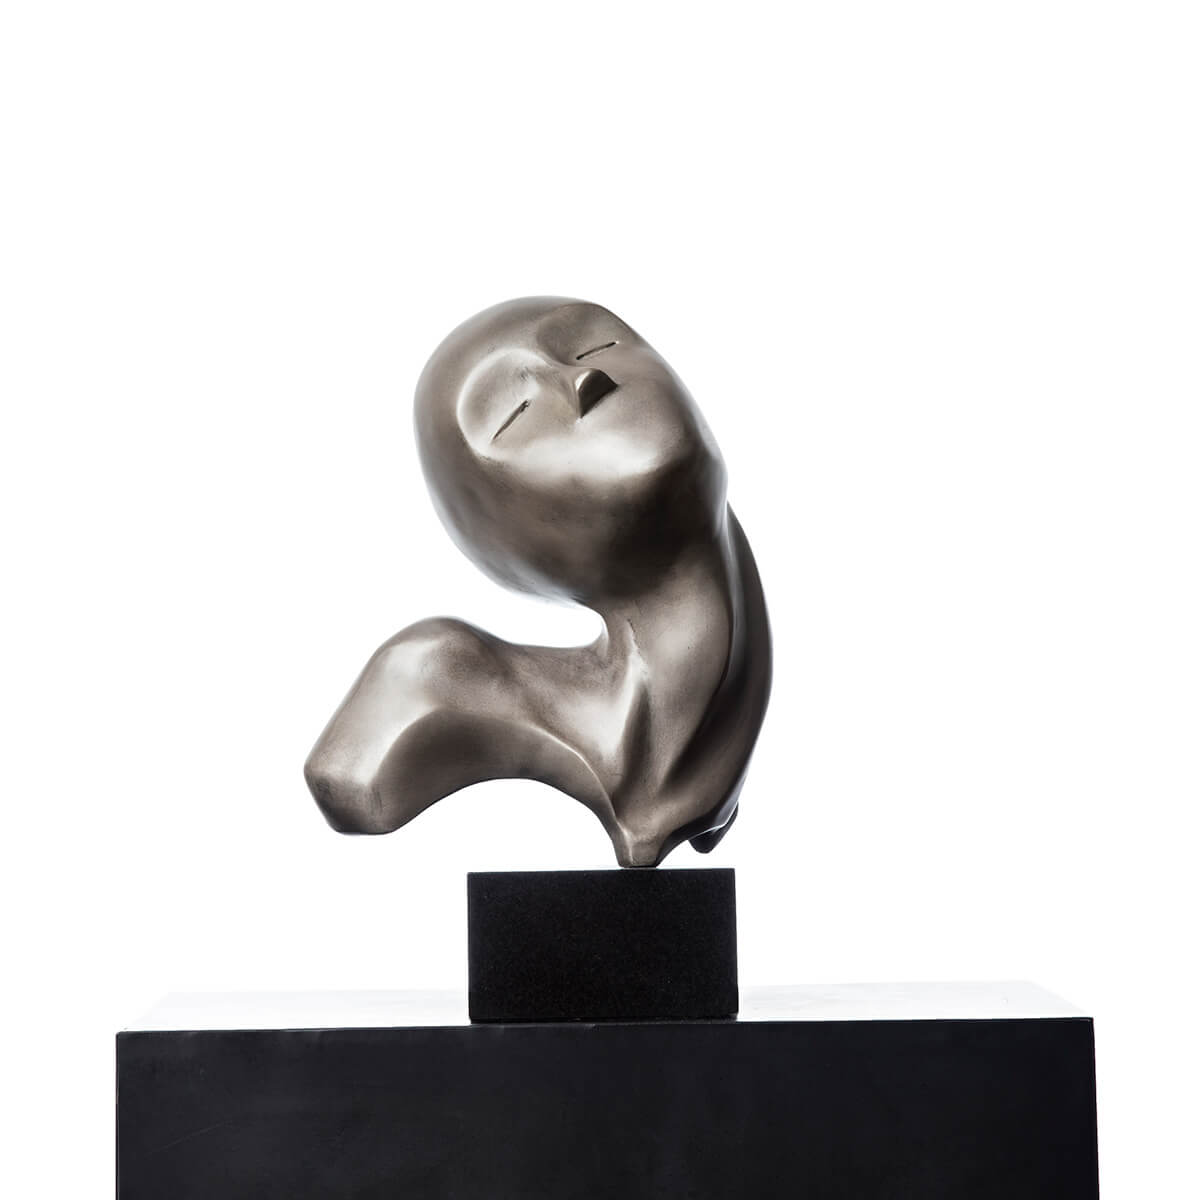 Robert-Helle-Sculpture-Gallery-Contentment-1-1200x1200